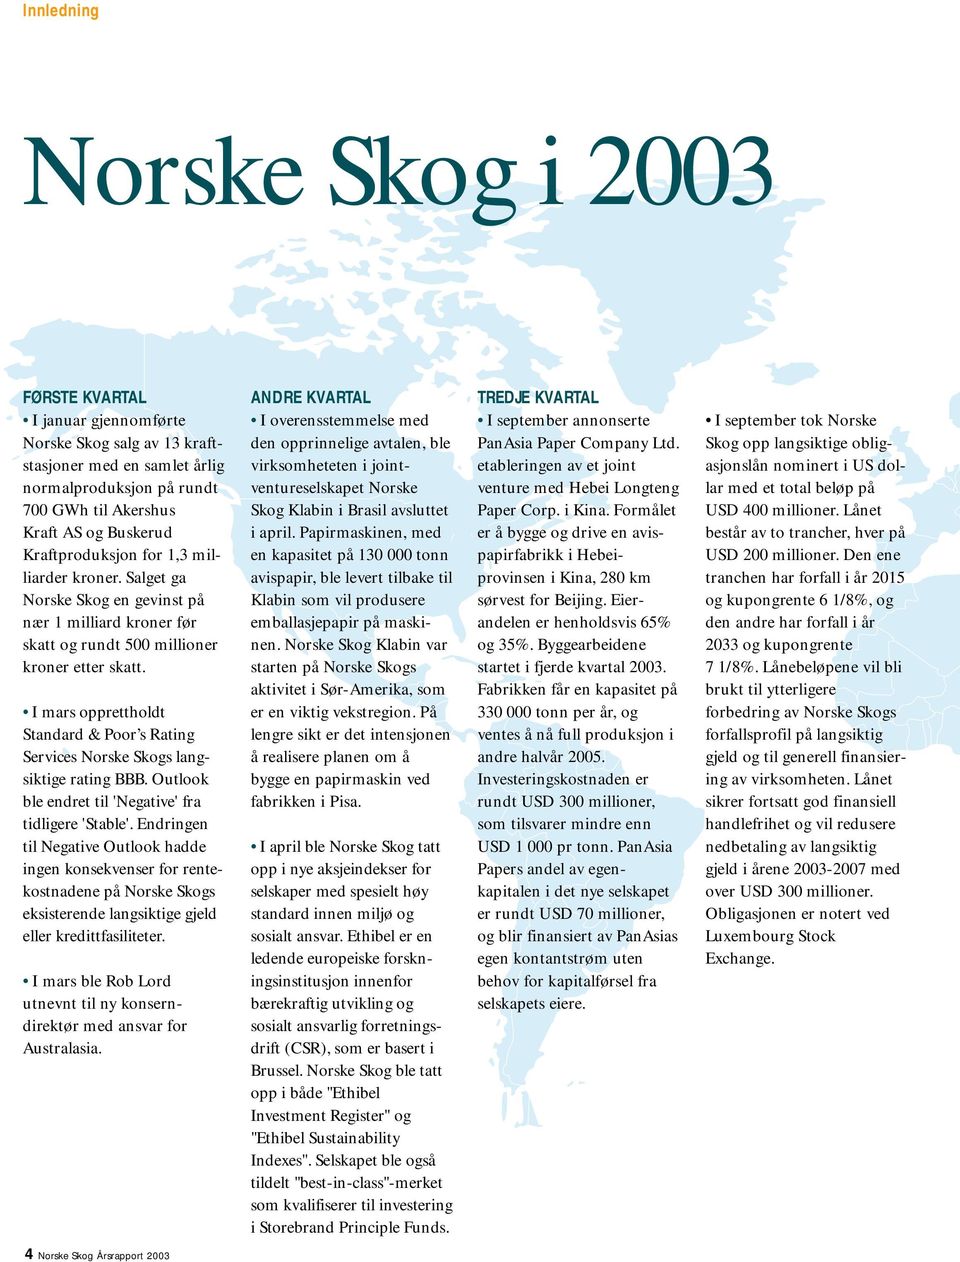 I mars opprettholdt Standard & Poor s Rating Services Norske Skogs langsiktige rating BBB. Outlook ble endret til 'Negative' fra tidligere 'Stable'.